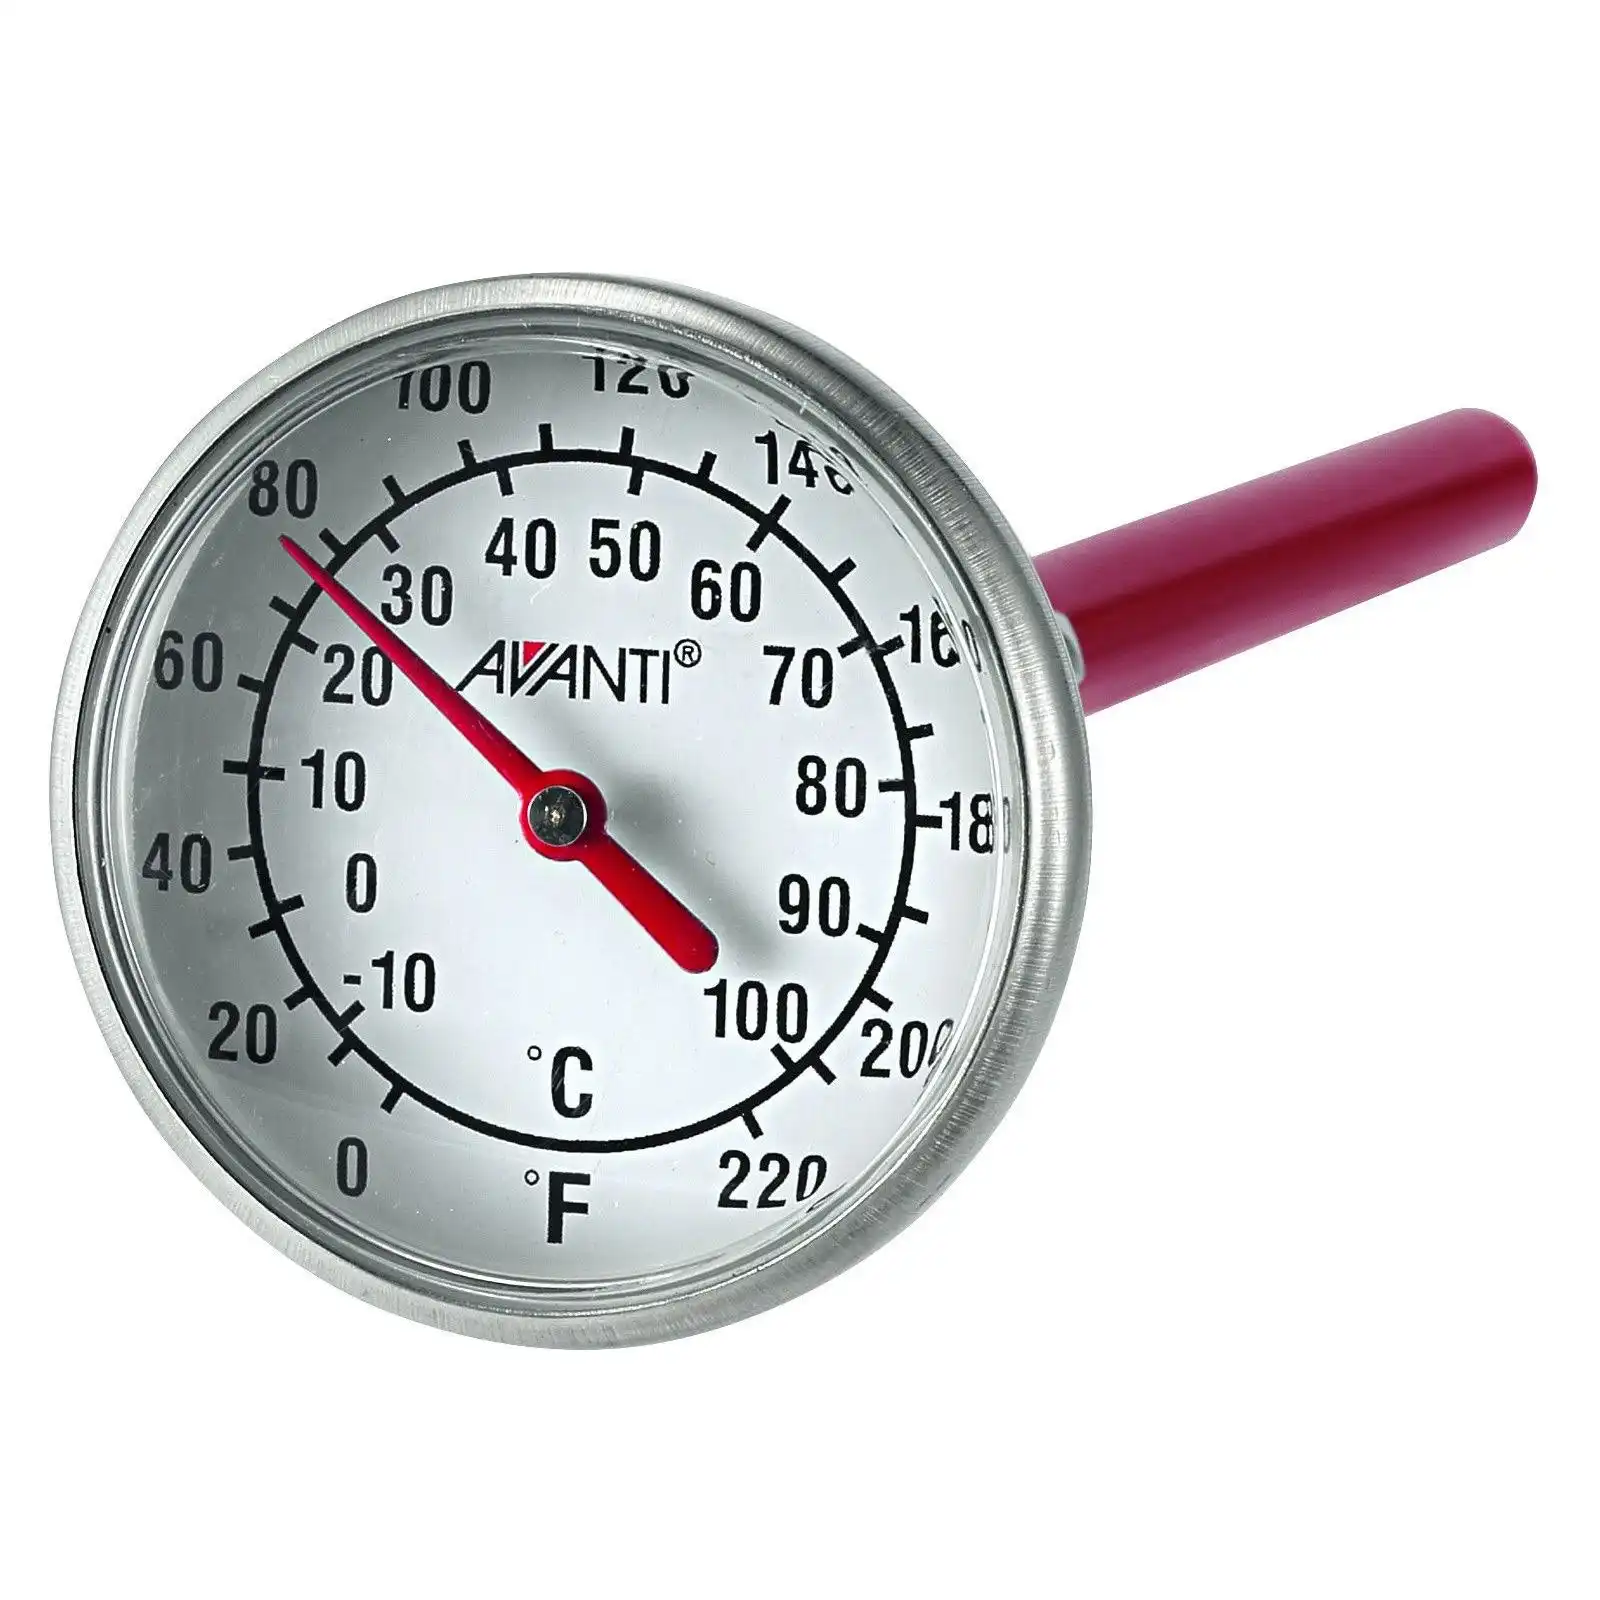 Avanti Precision Meat Thermometer